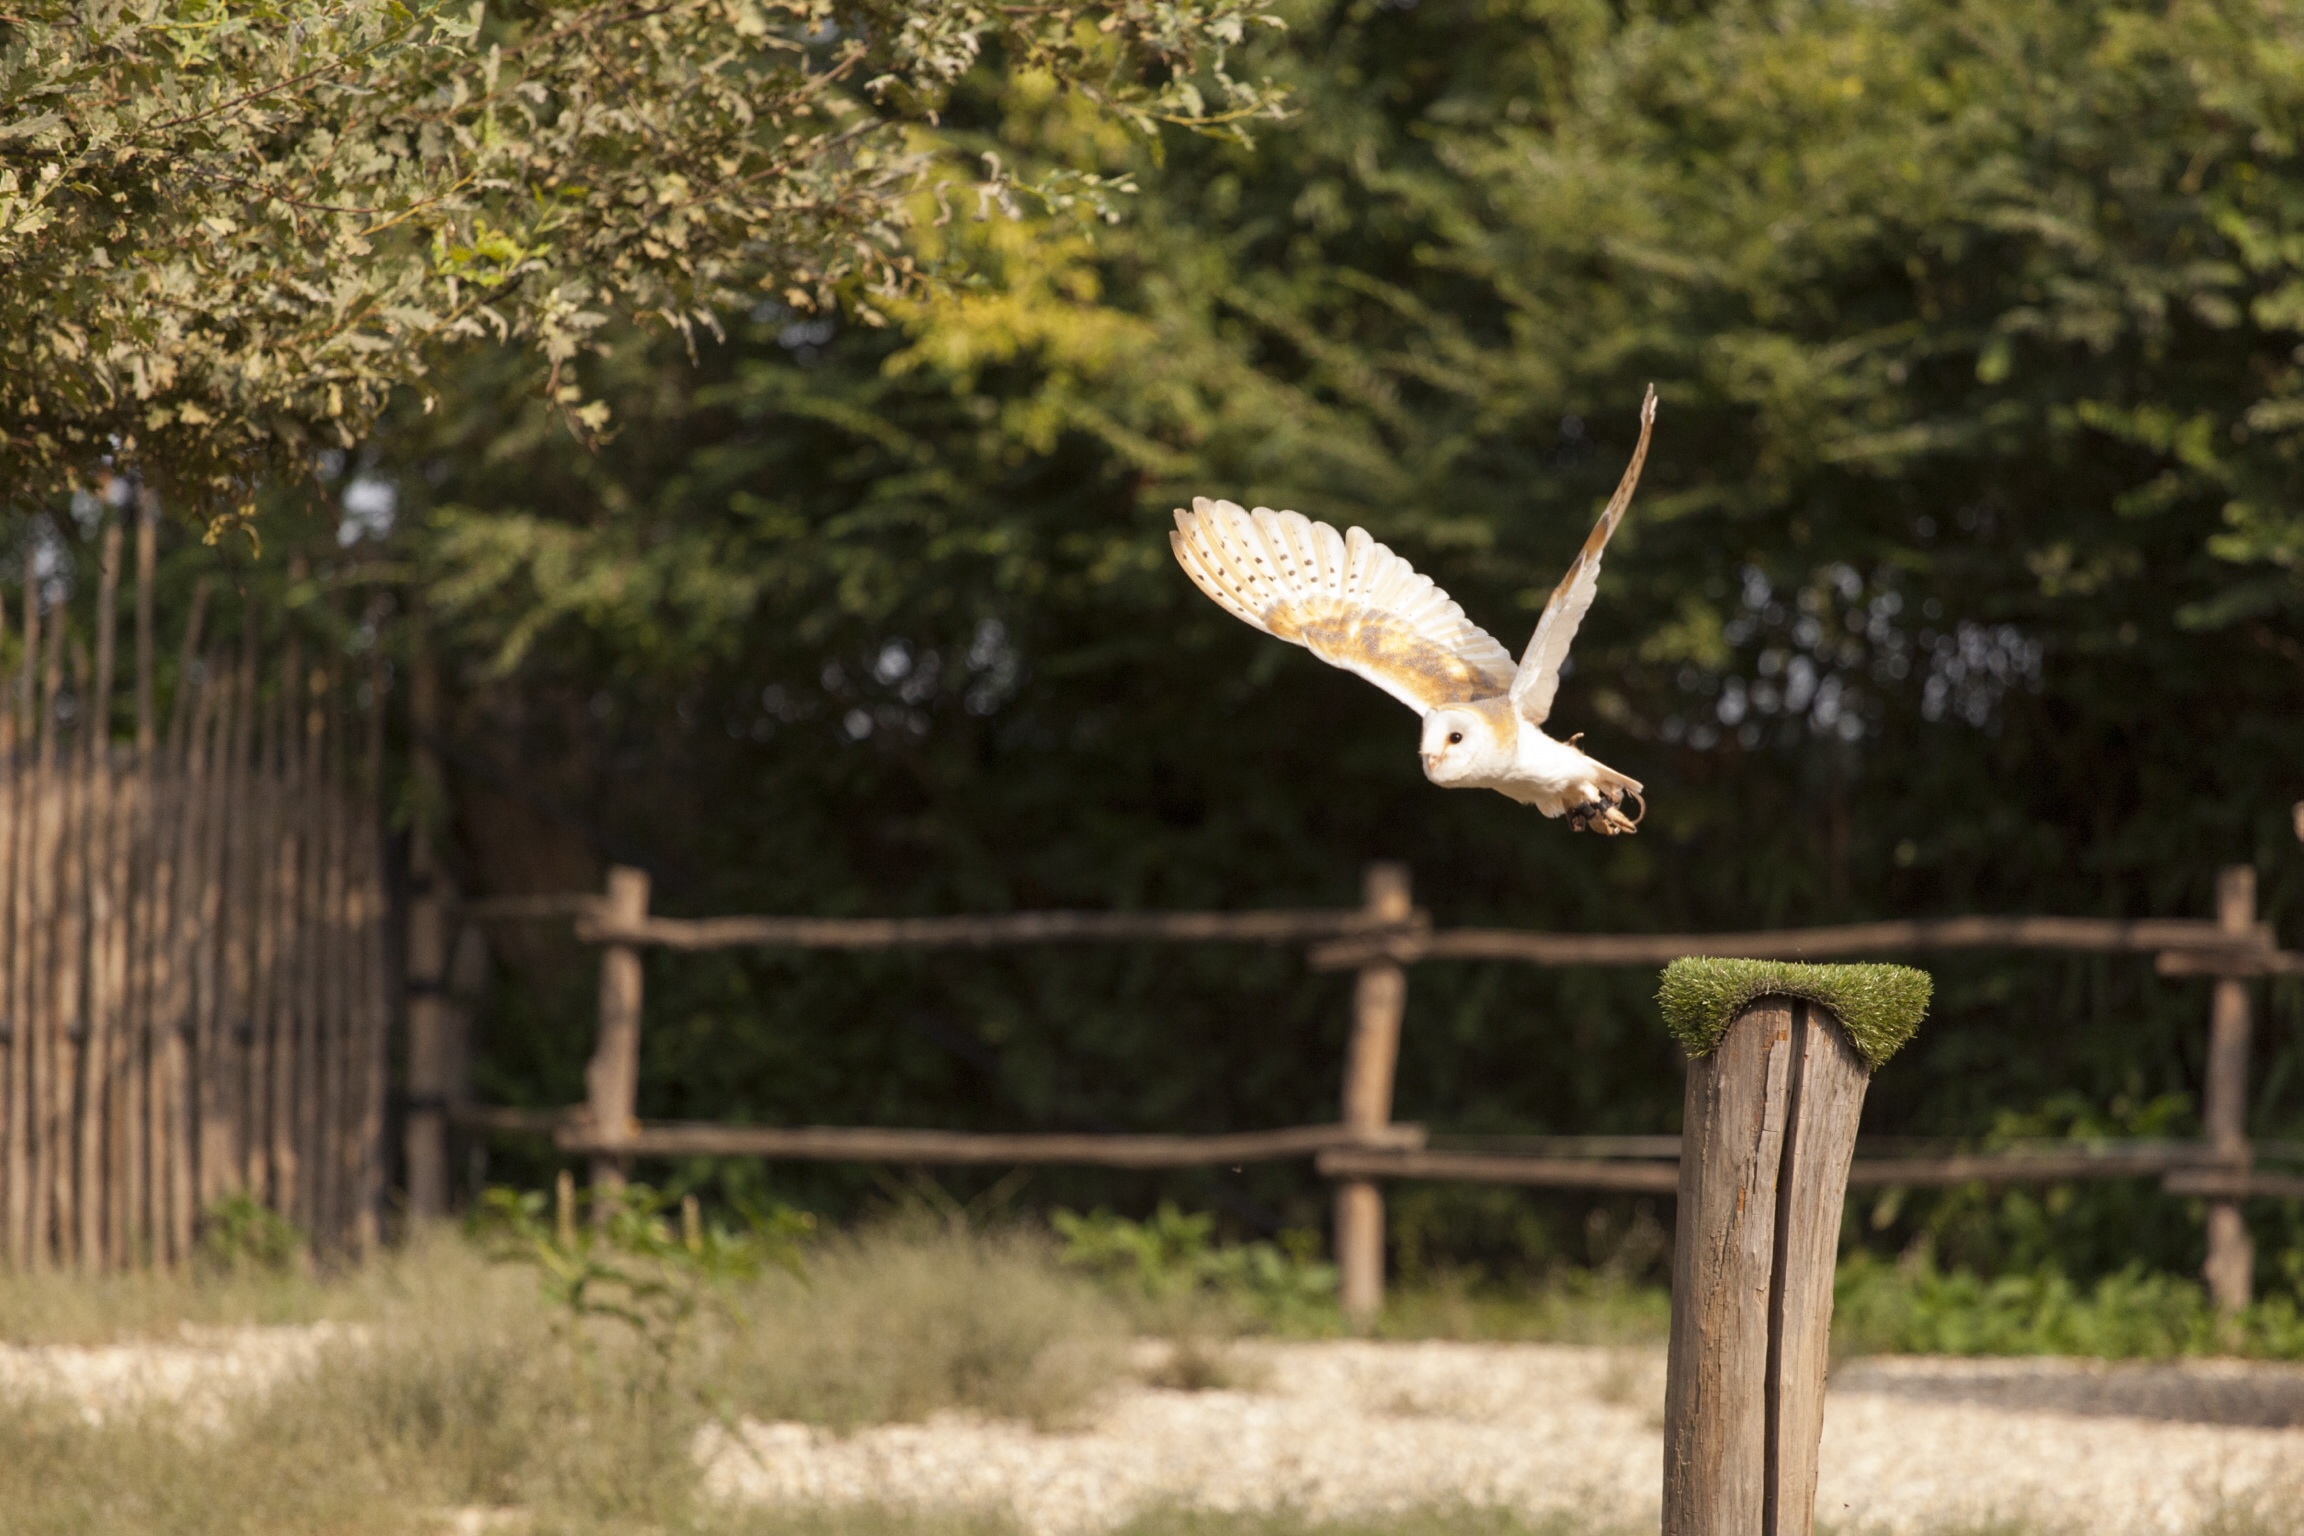 Barn Owl in flight...